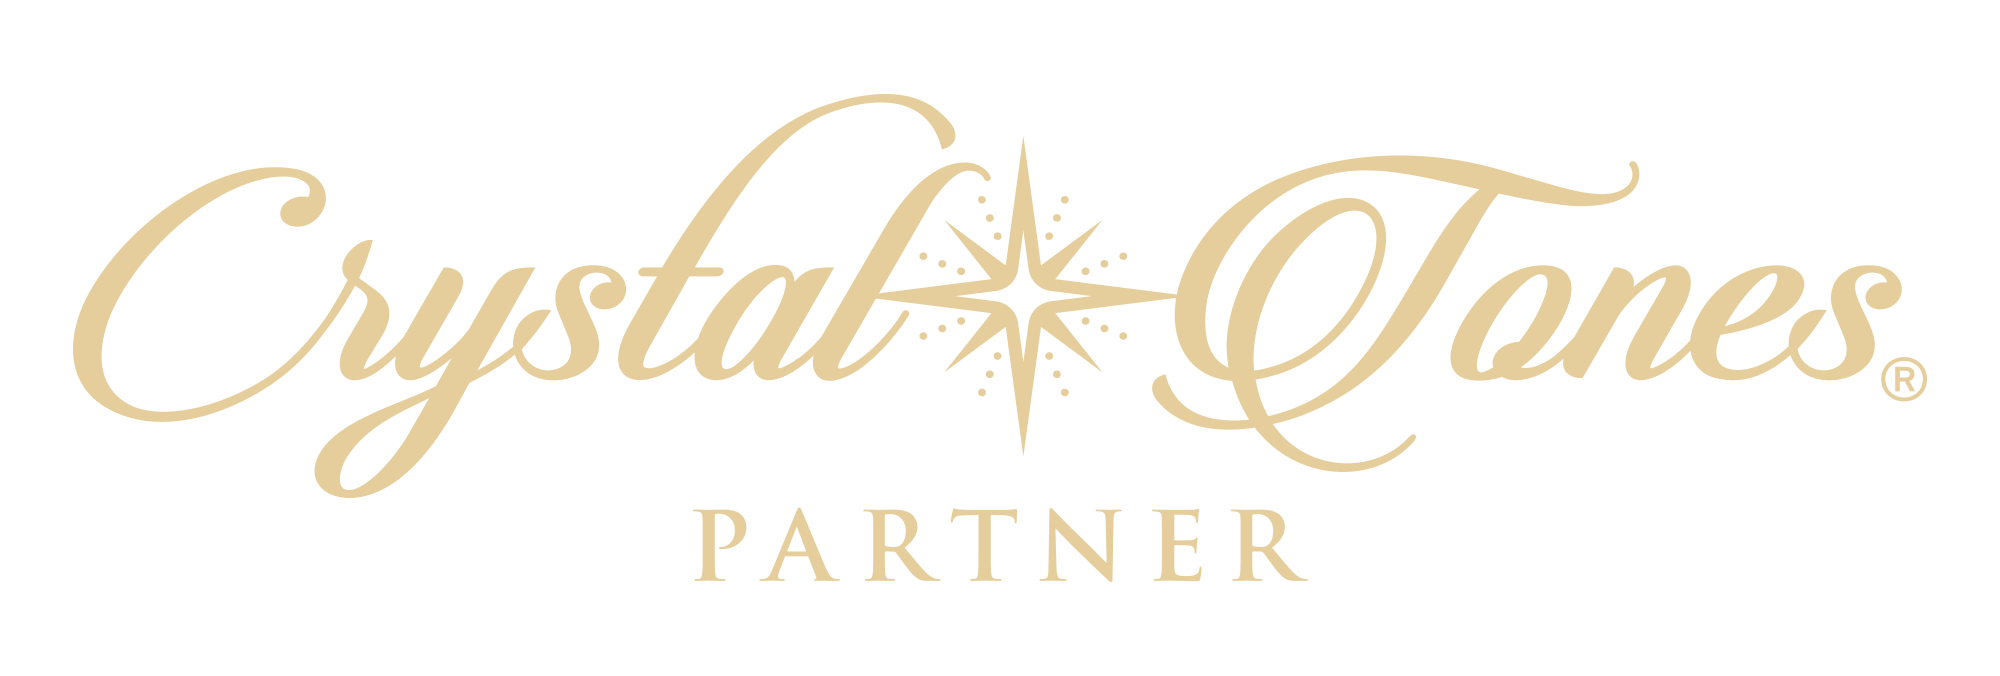 CT Partner logo solid gold.png